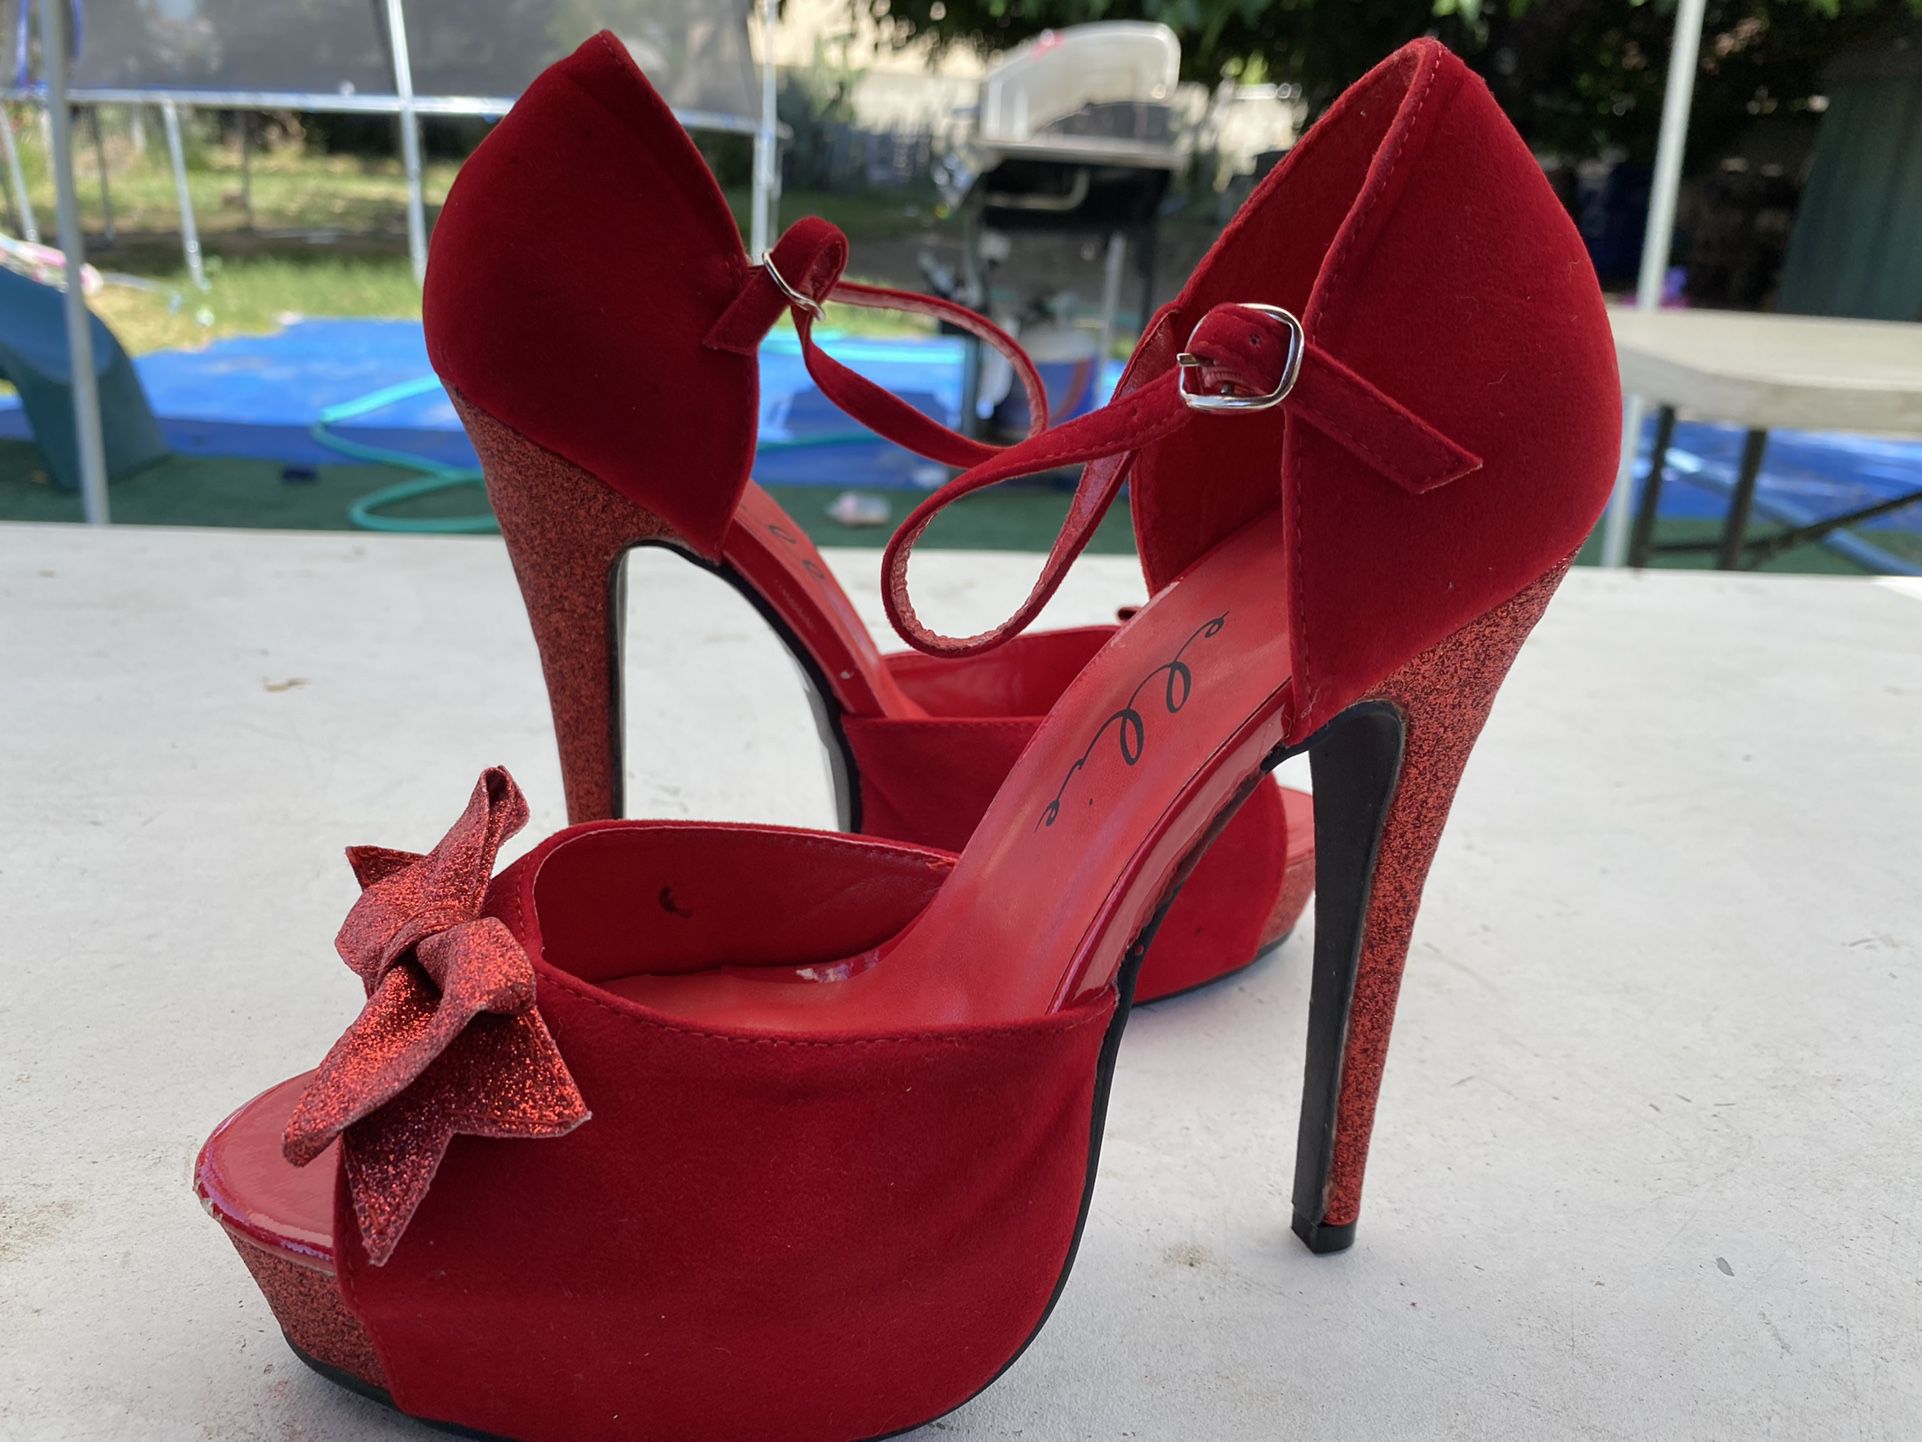 Size 8 Red Ellie Brand High Heels